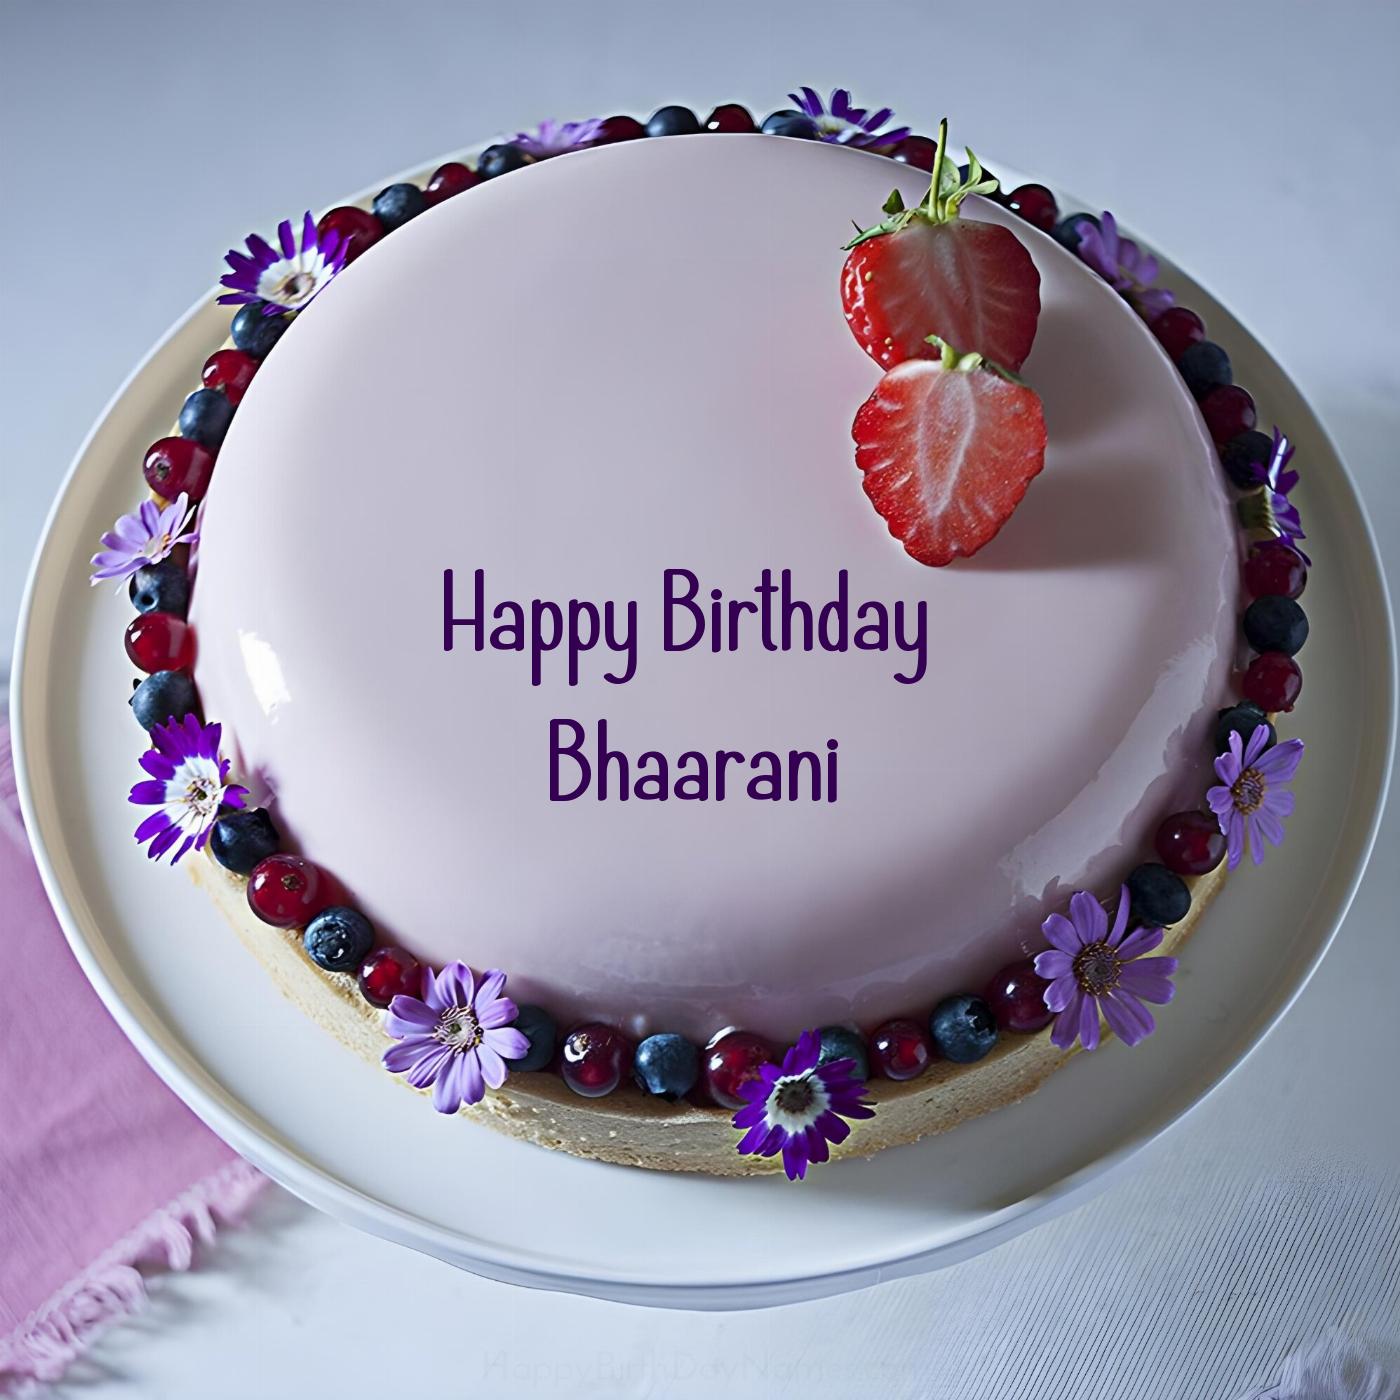 Happy Birthday Bhaarani Strawberry Flowers Cake